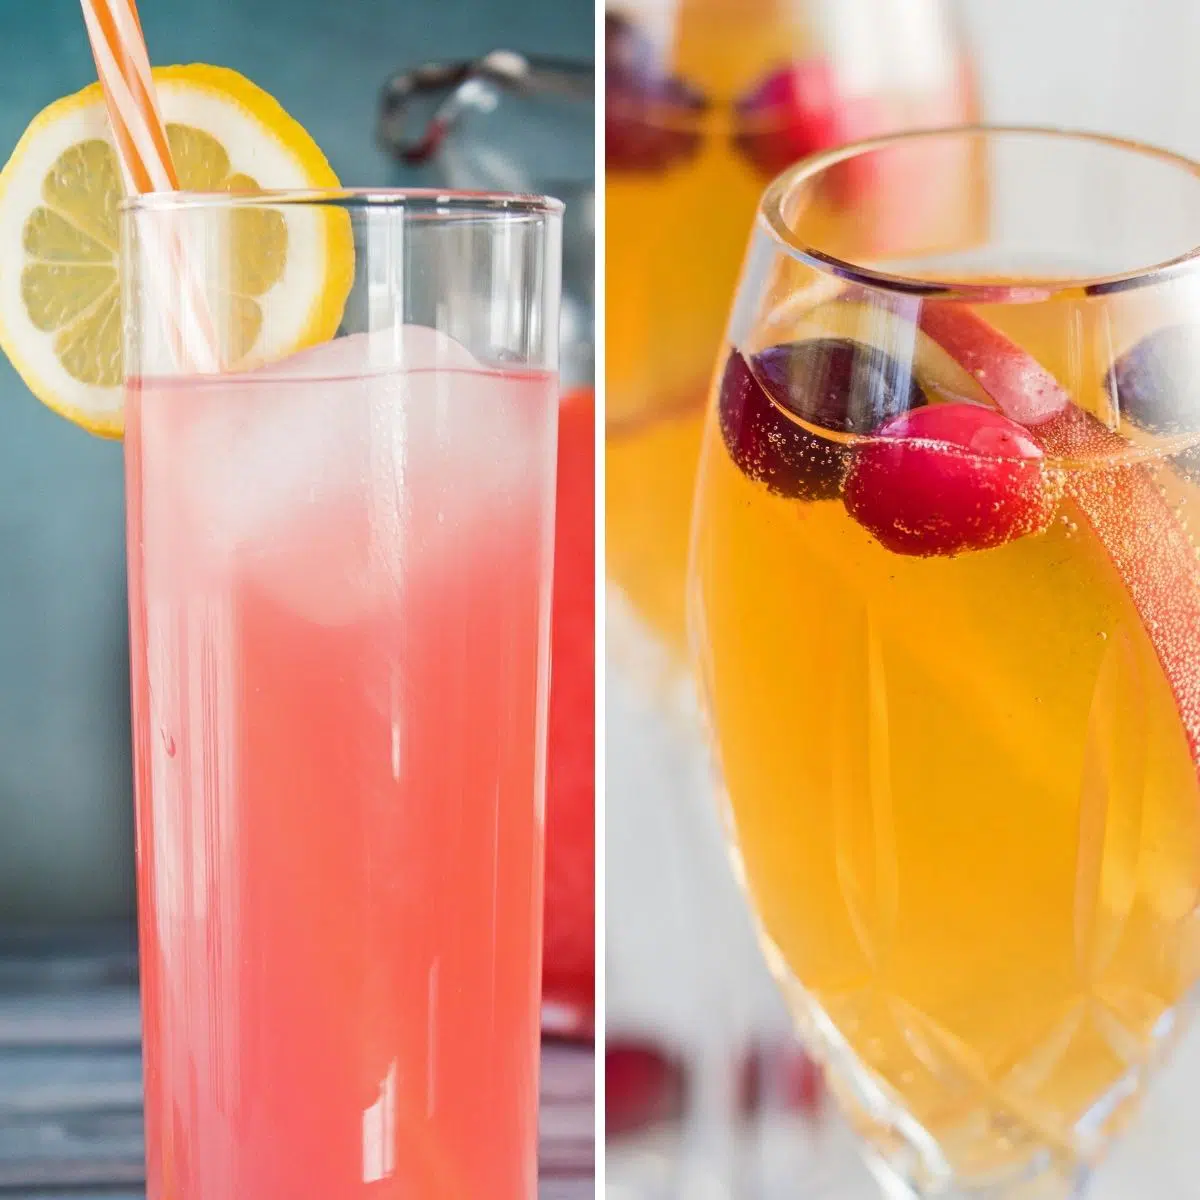 Meilleure image de recettes de cocktails sans alcool montrant deux favoris savoureux dans des verres transparents dans une image carrée côte à côte.